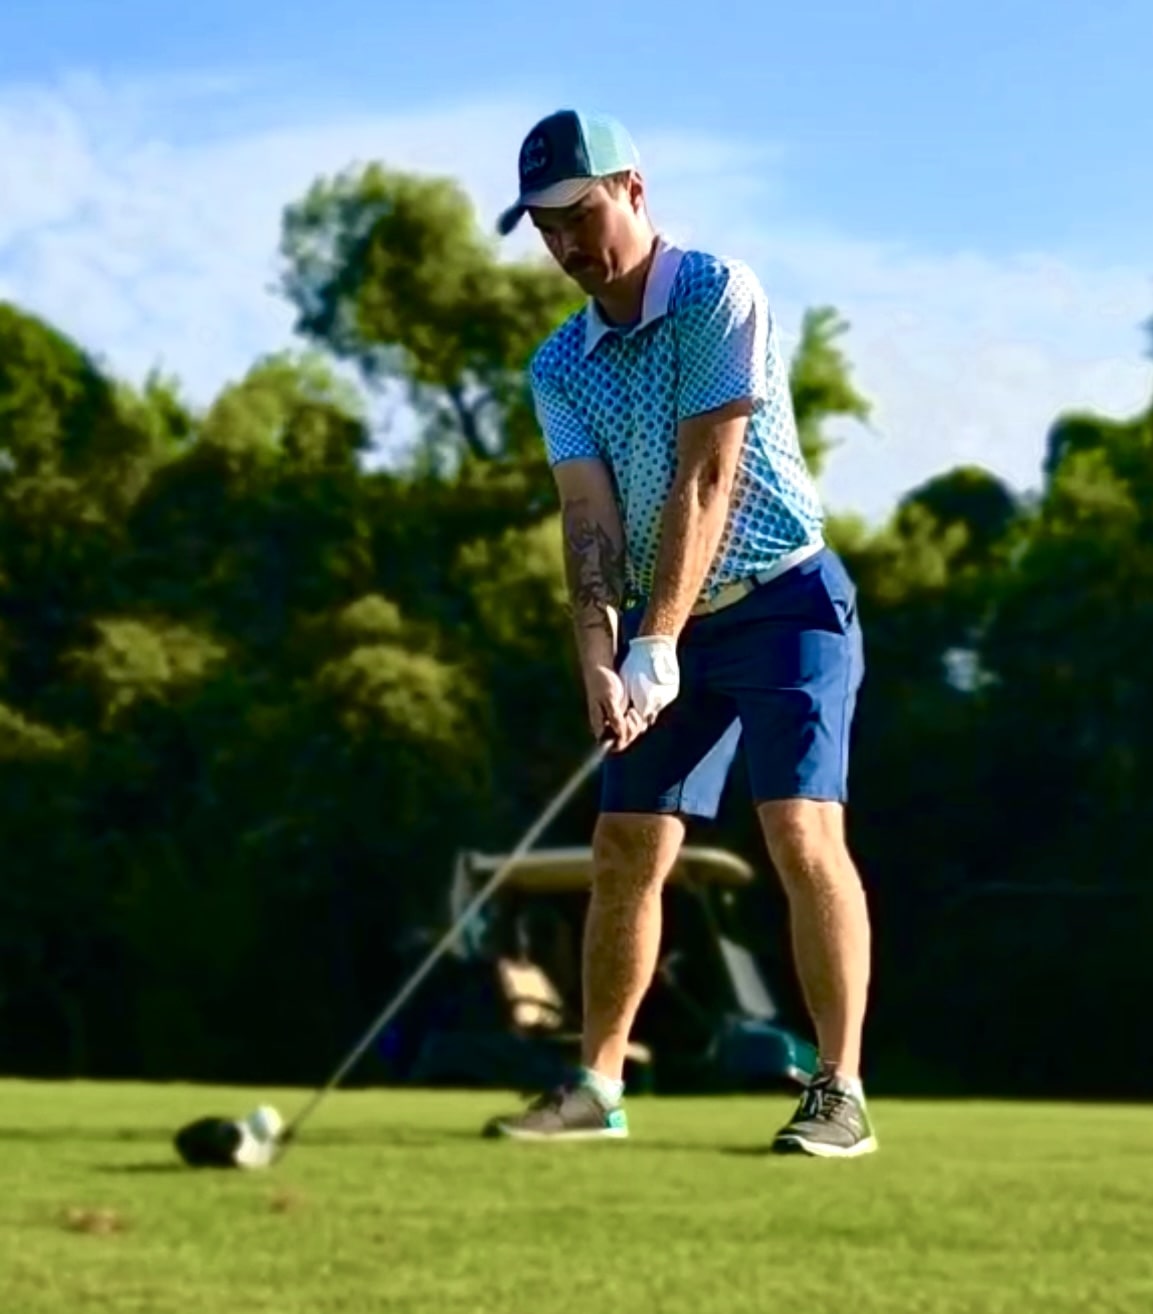 KEA Golf apparel. mens golf shirt. best new golf shirt brands. spot-on birdie golf shirt, blue and white golf shirt